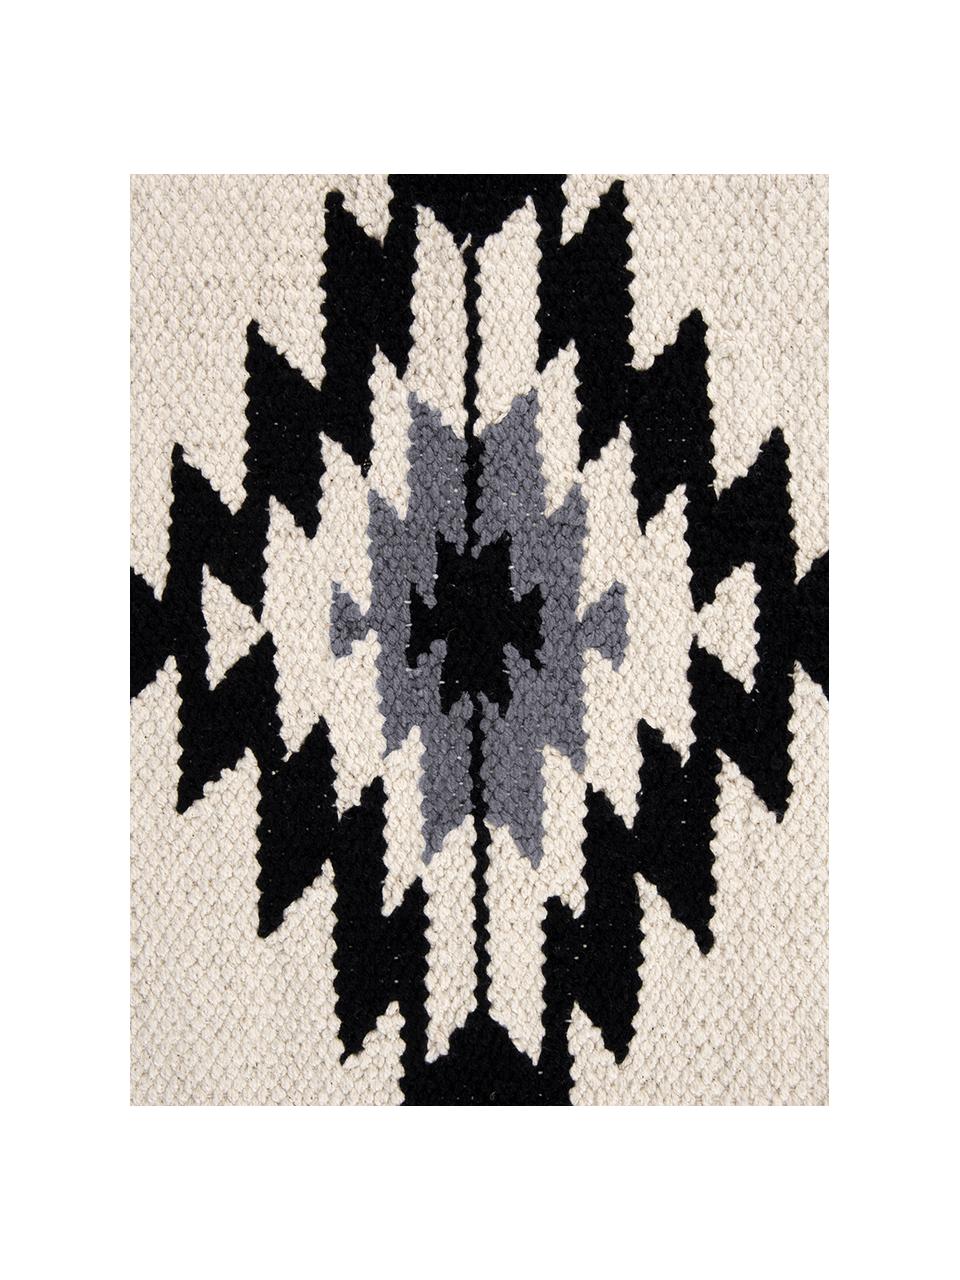 Geweven kussenhoes Toluca in ethno stijl, 100% katoen, Zwart, beige, grijs, 45 x 45 cm